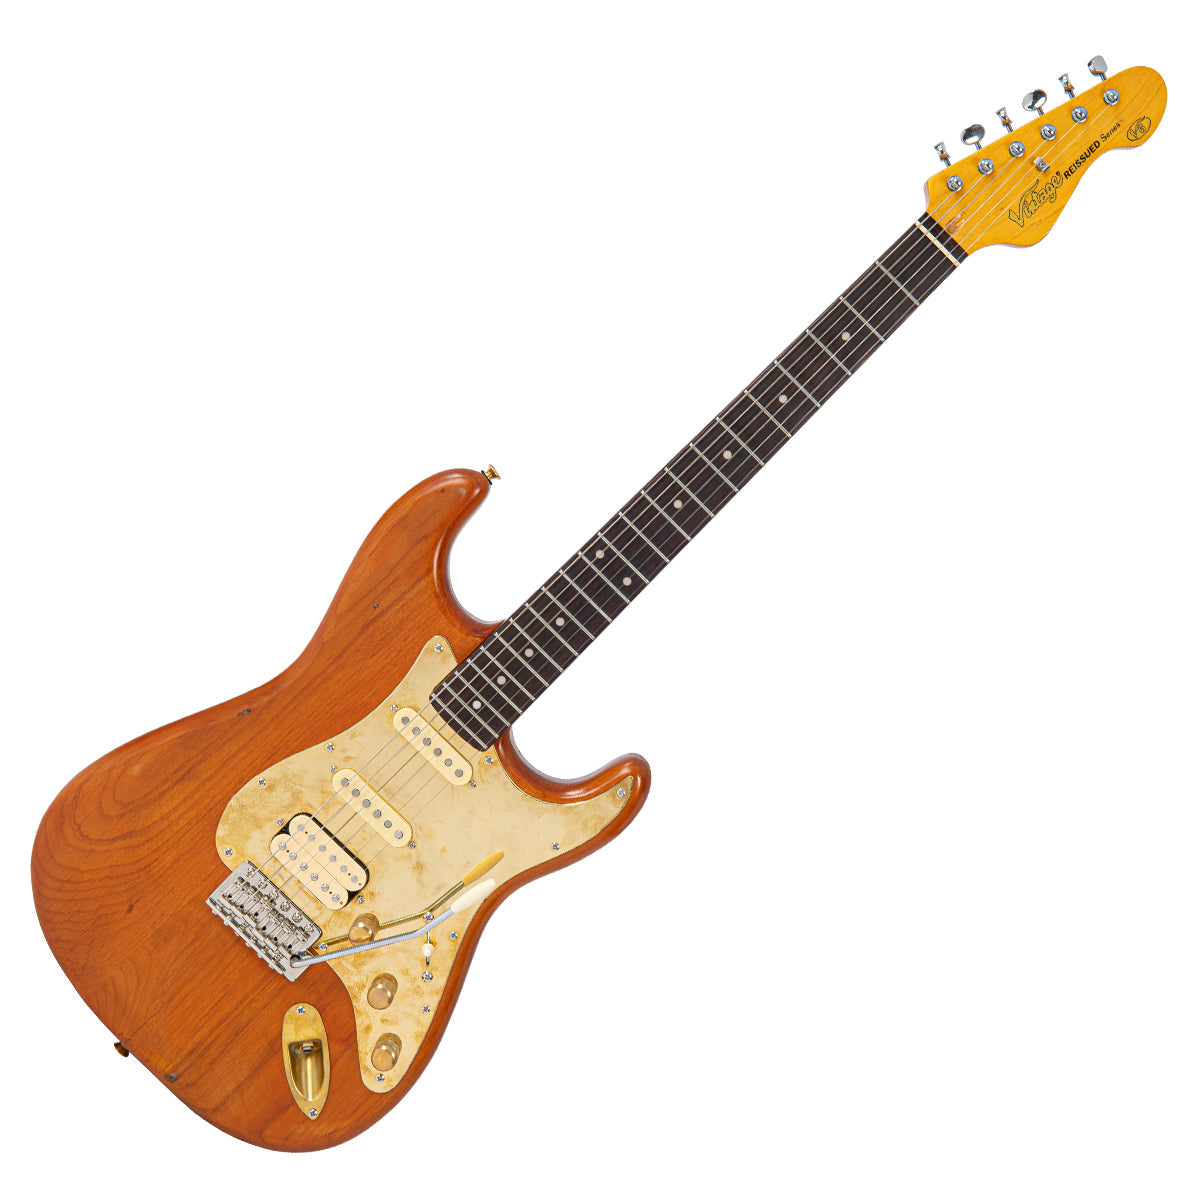 SOLD - Vintage V6 ProShop Custom-Build ~ Fast Eddie Style Tribute, Electrics for sale at Richards Guitars.